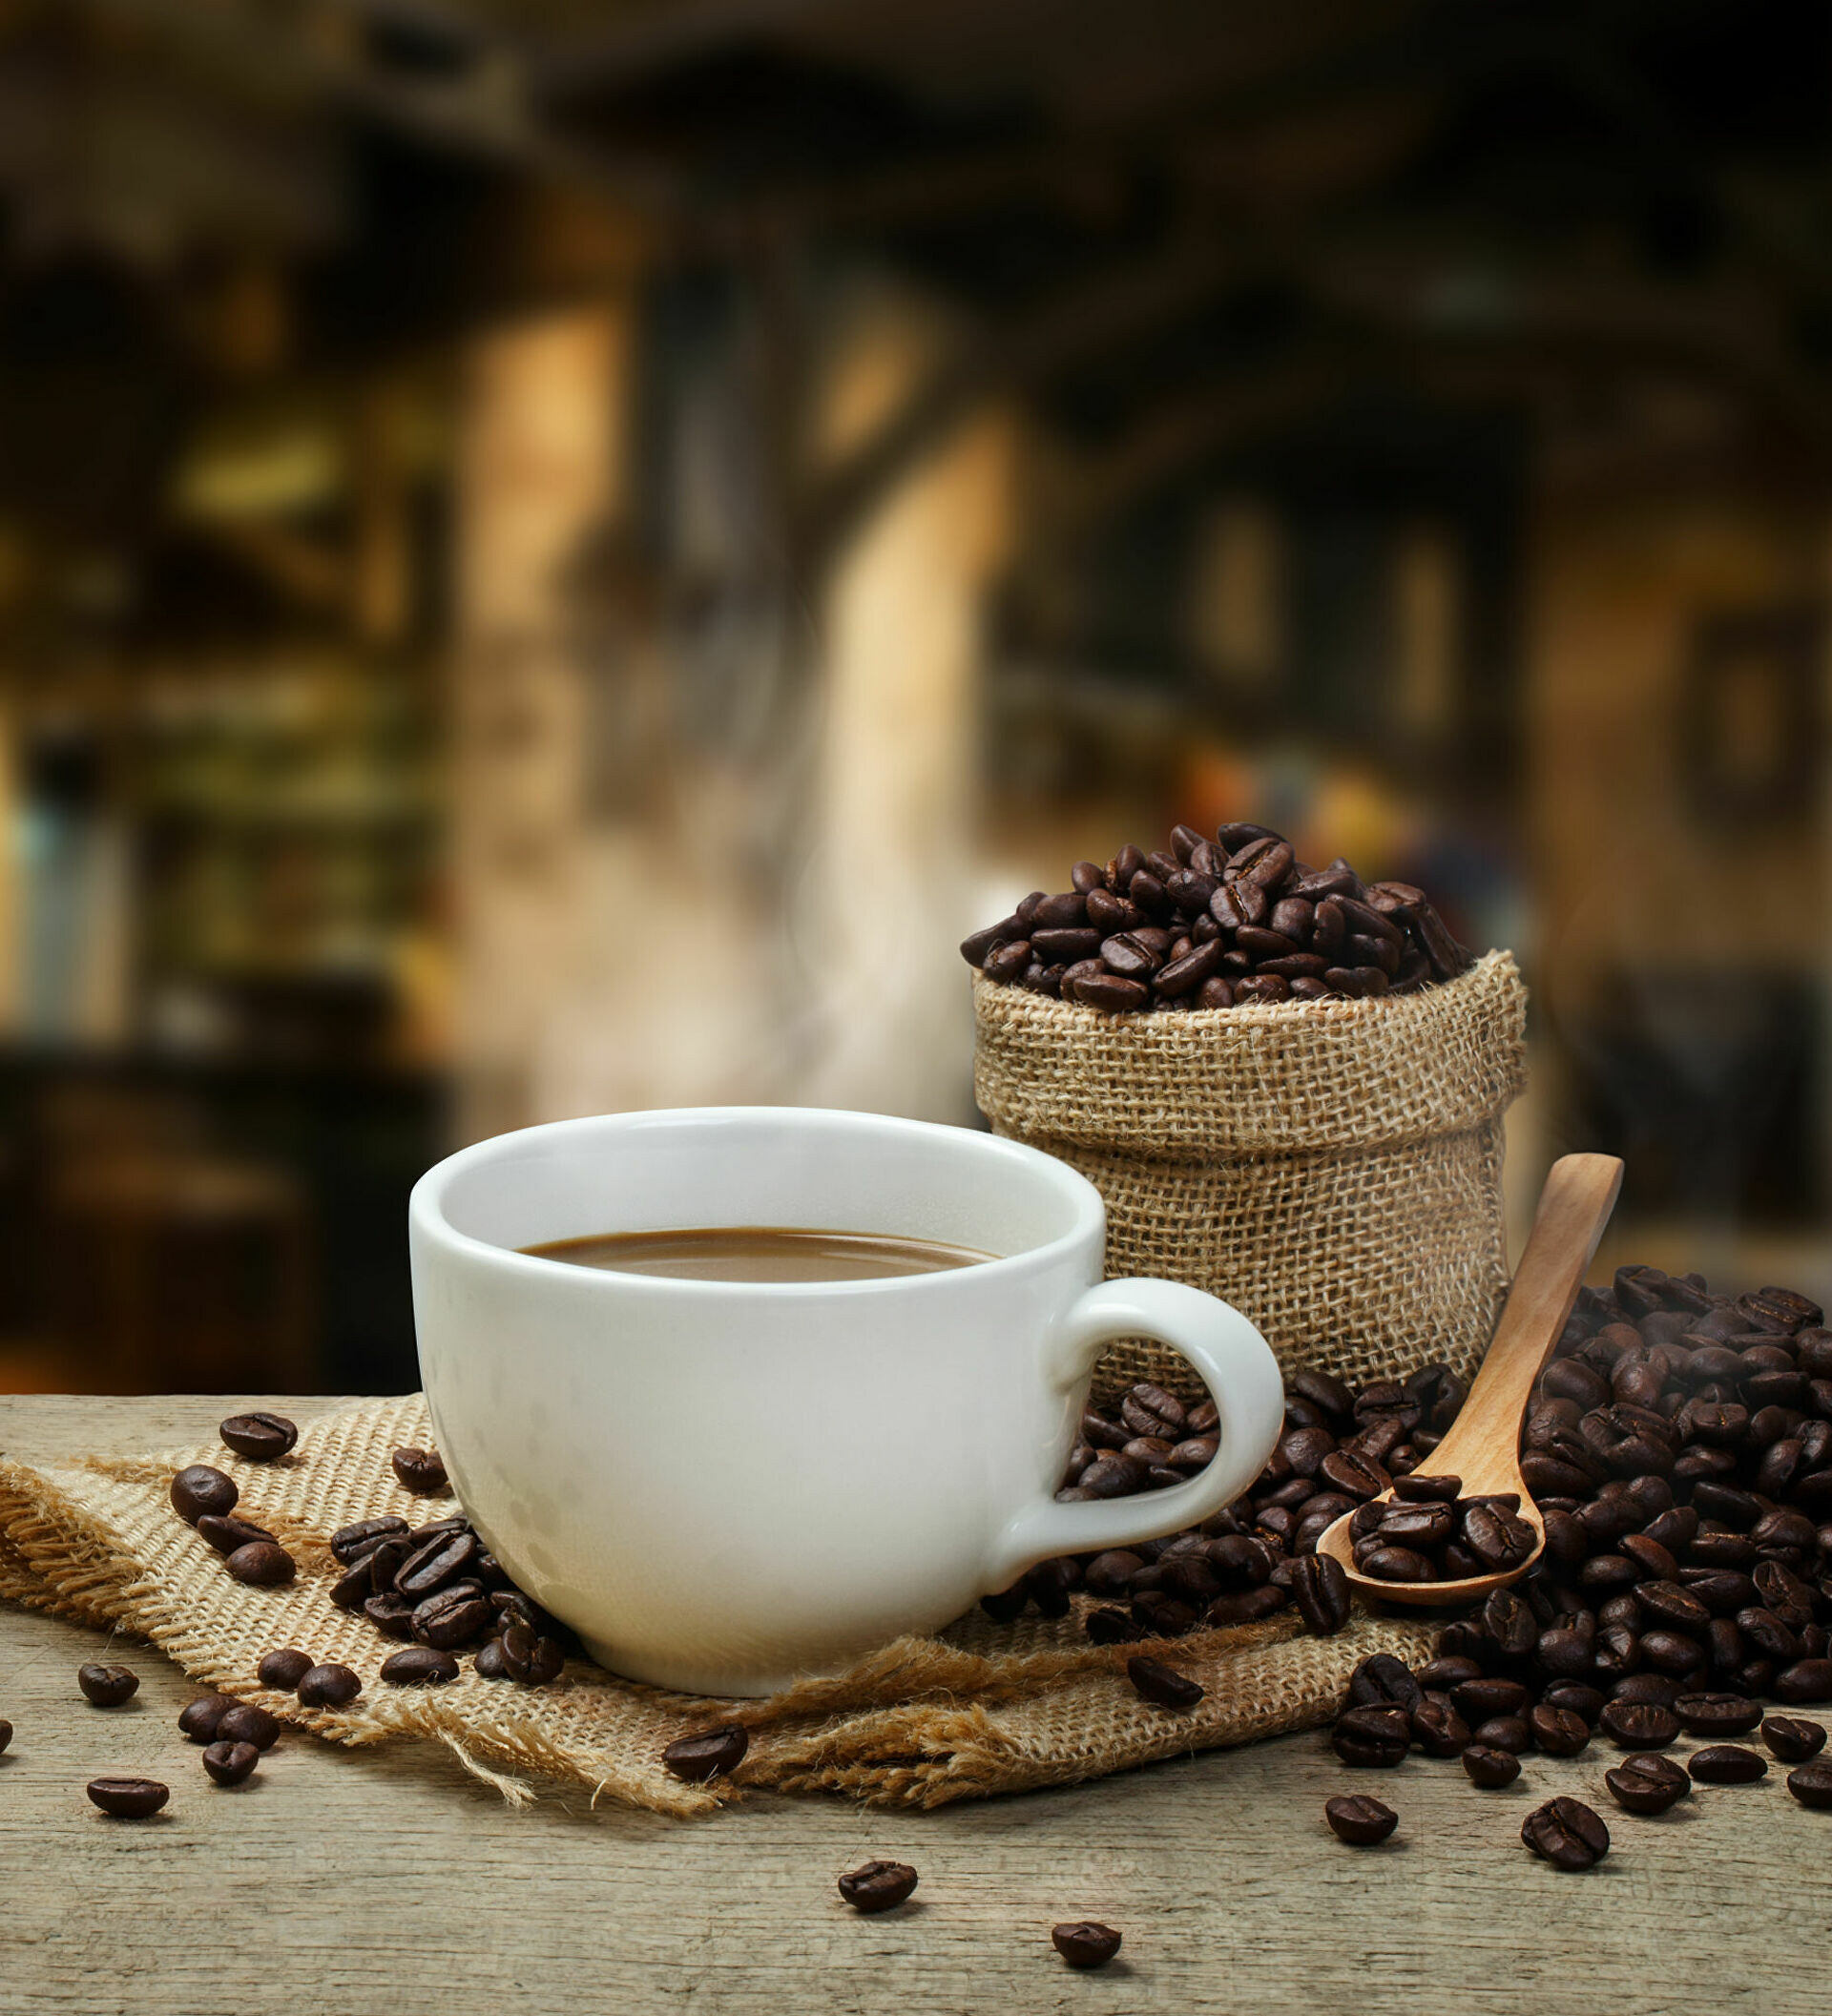 مستقبل القهوة في مختبرات العلماء!فهل تنجح التجربة وتحمي عشاق القهوة من تحديات انقراضها! 